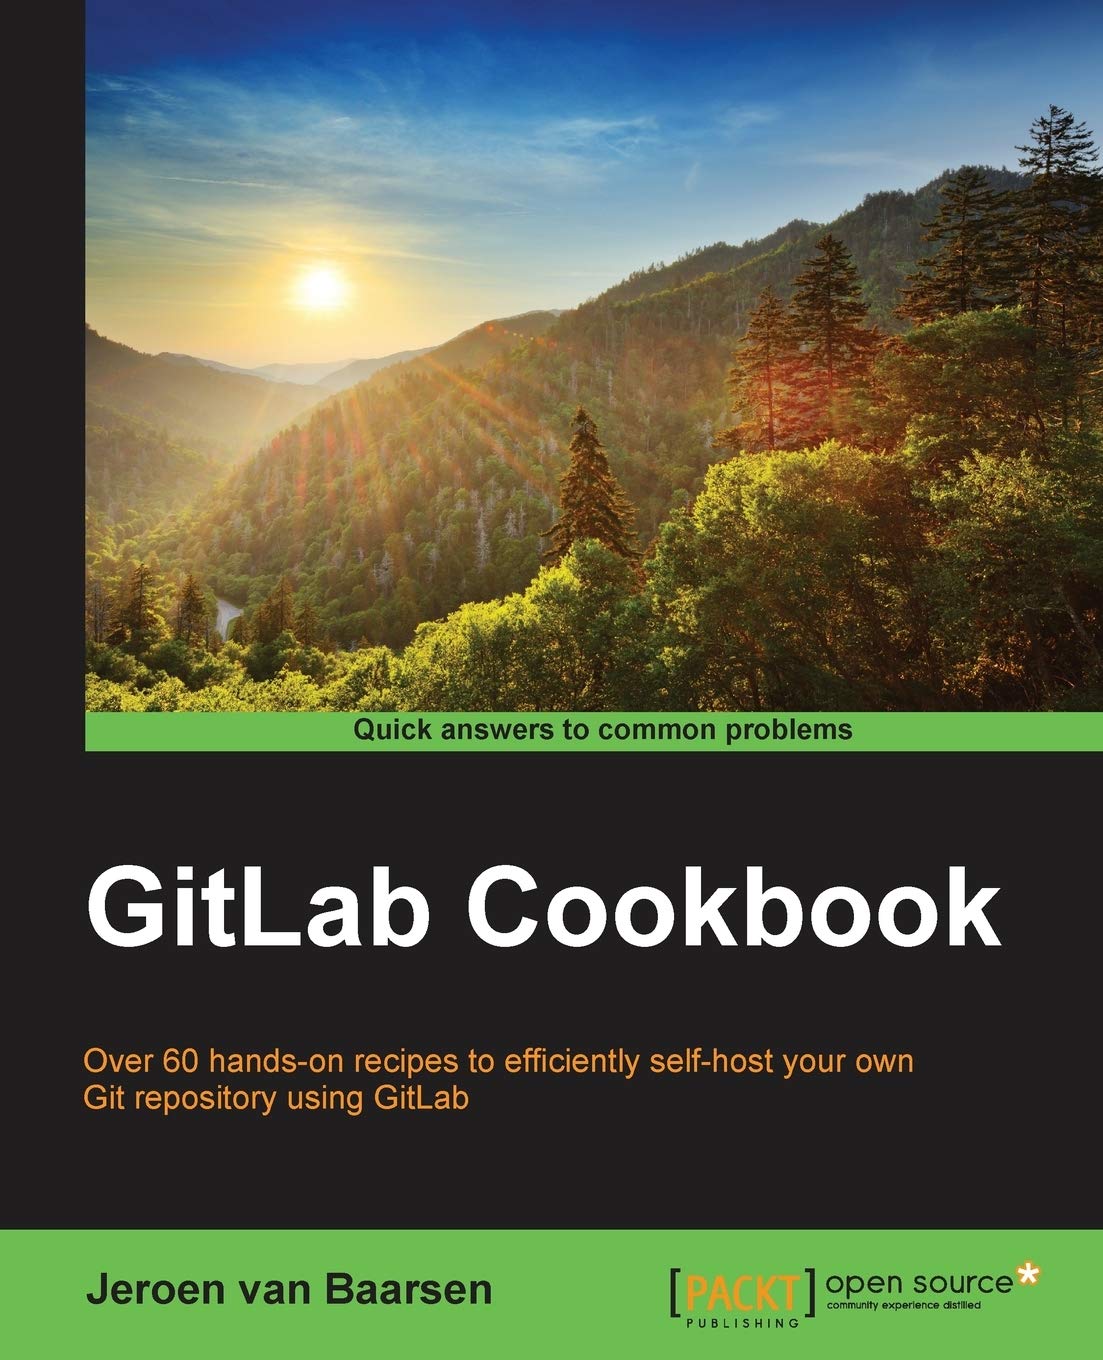 GitLab Cookbook by Jeroen van Baarsen